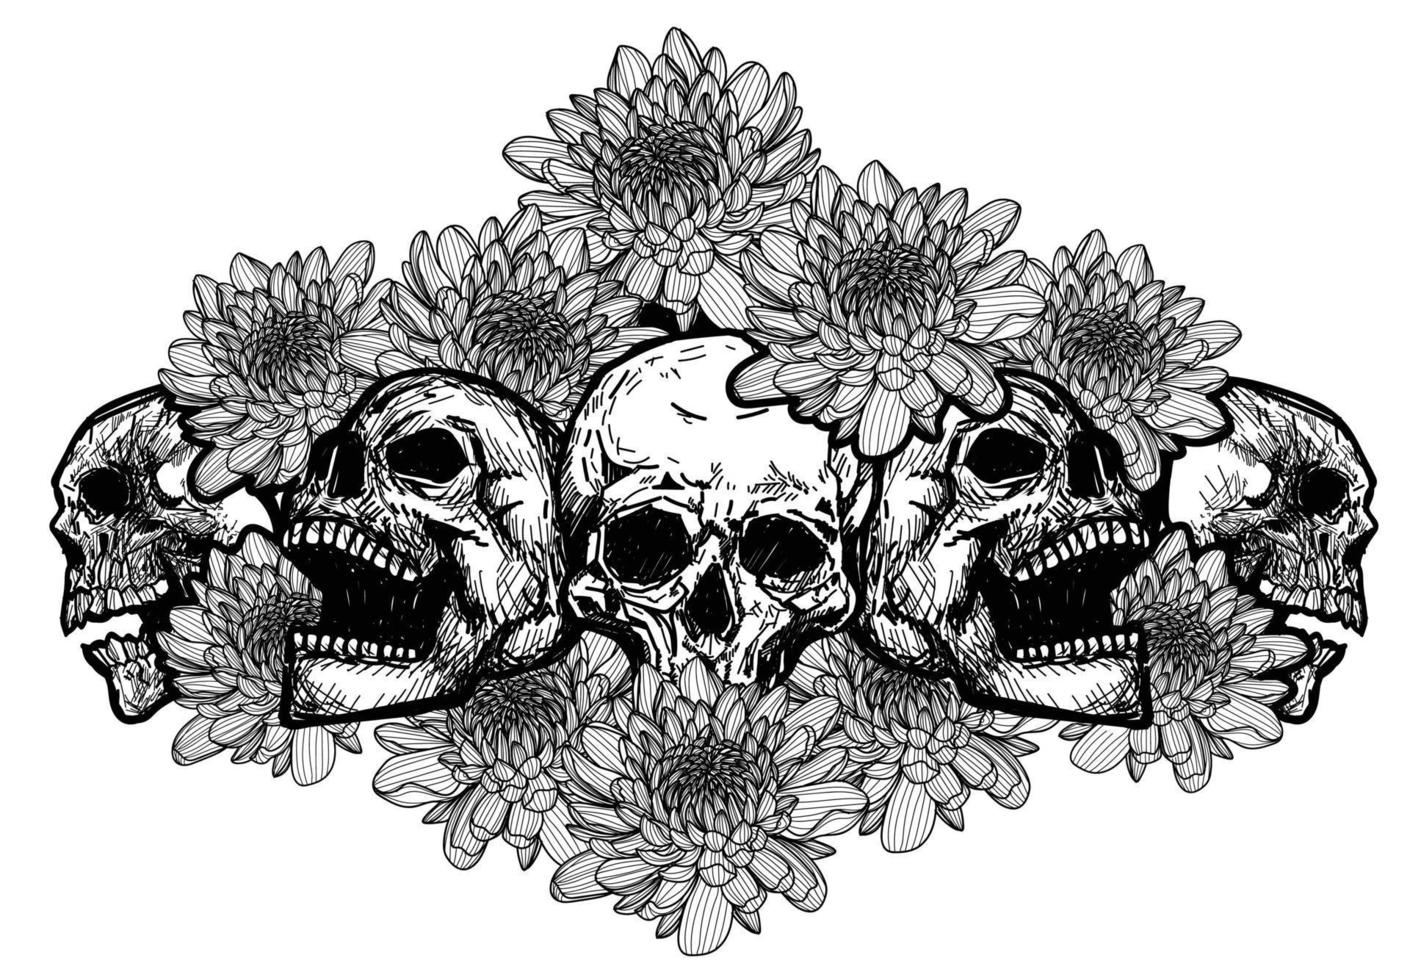 arte del tatuaje del cráneo con flores dibujo boceto en blanco y negro vector